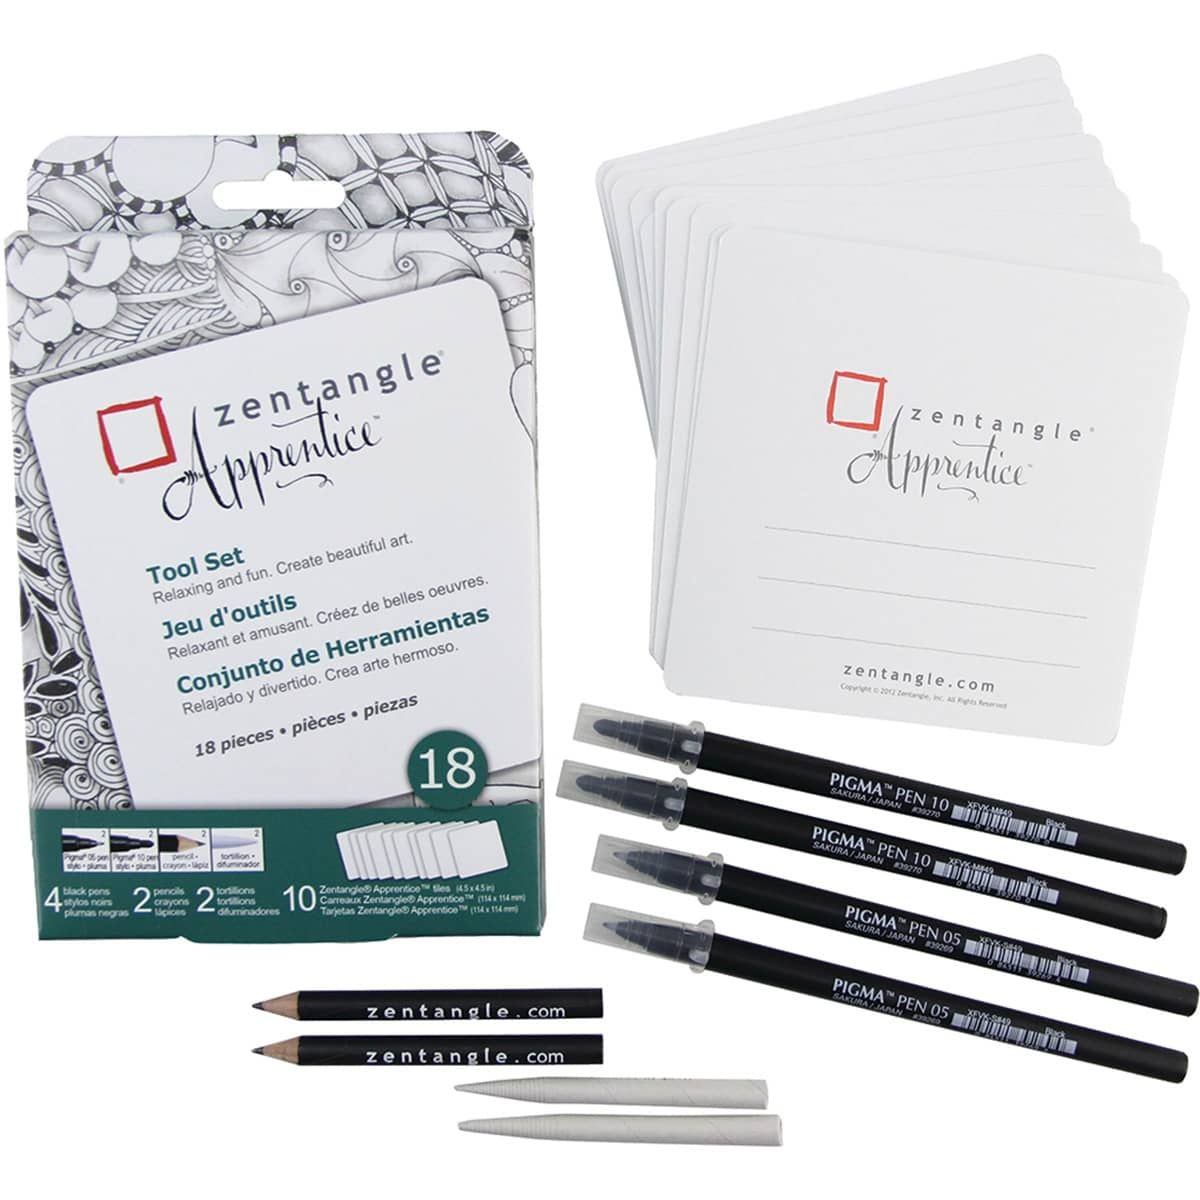 Zentangle Apprentice pen set